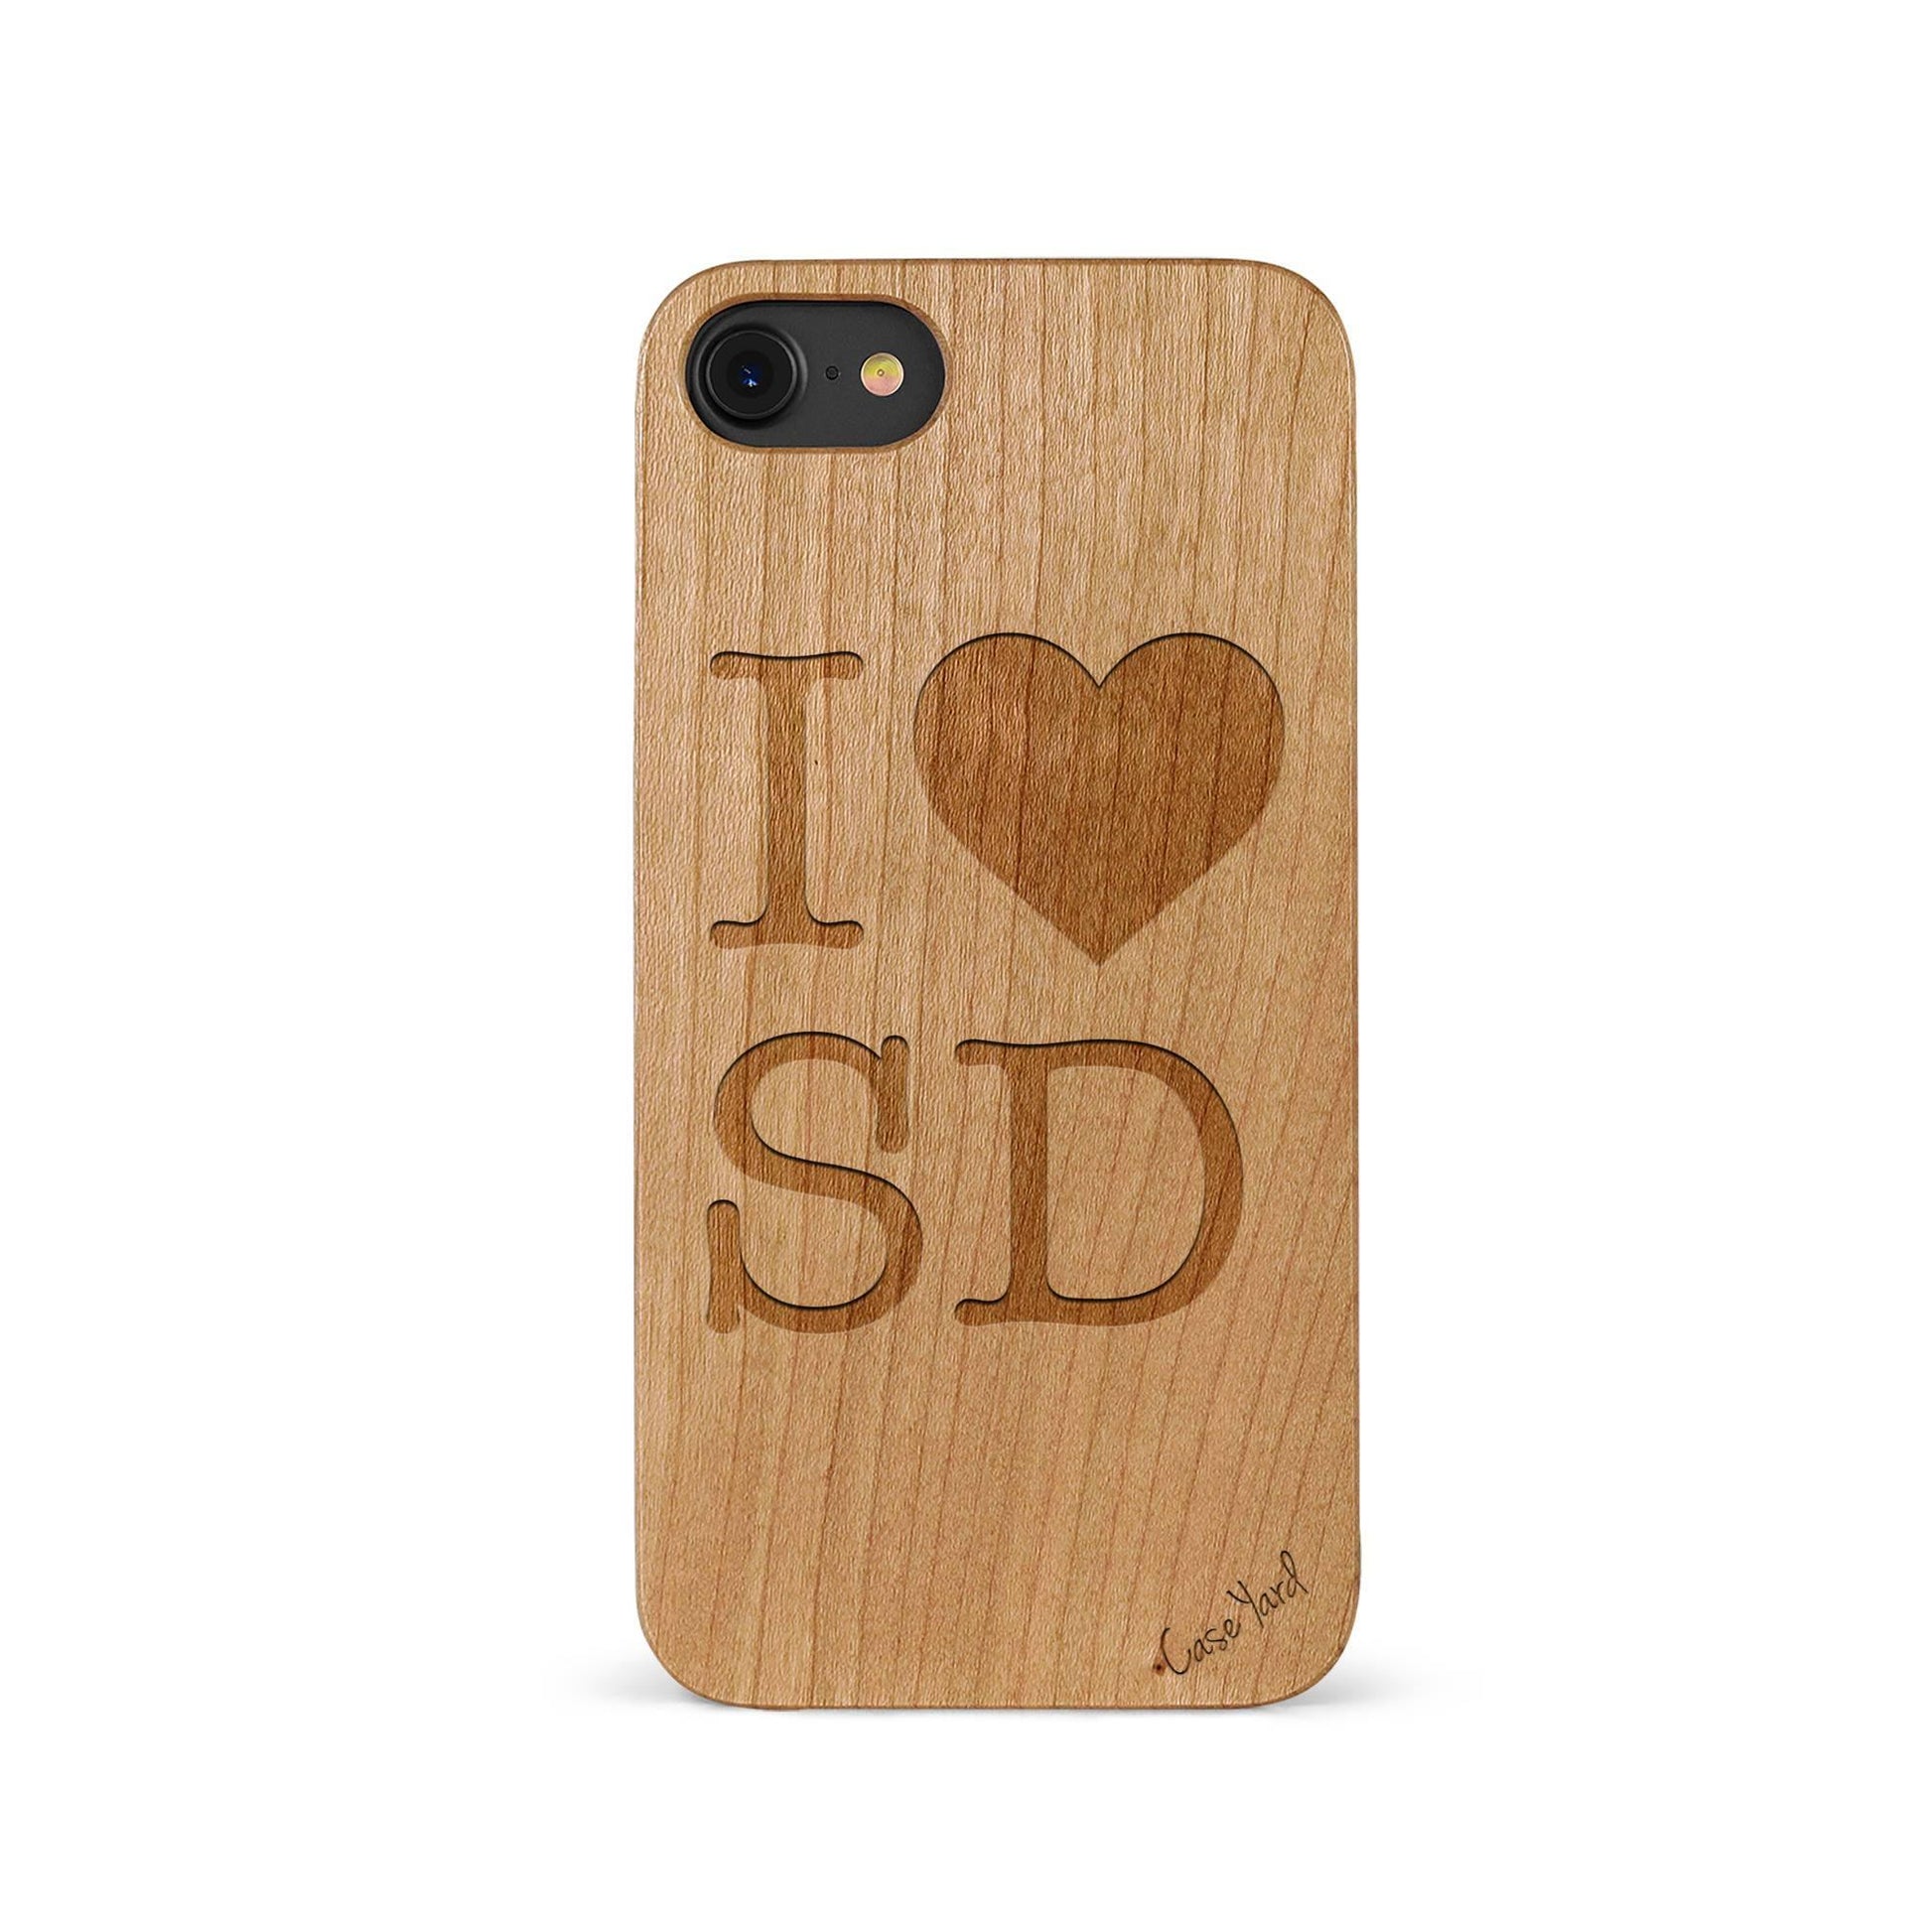 Love SD - Case Yard USA